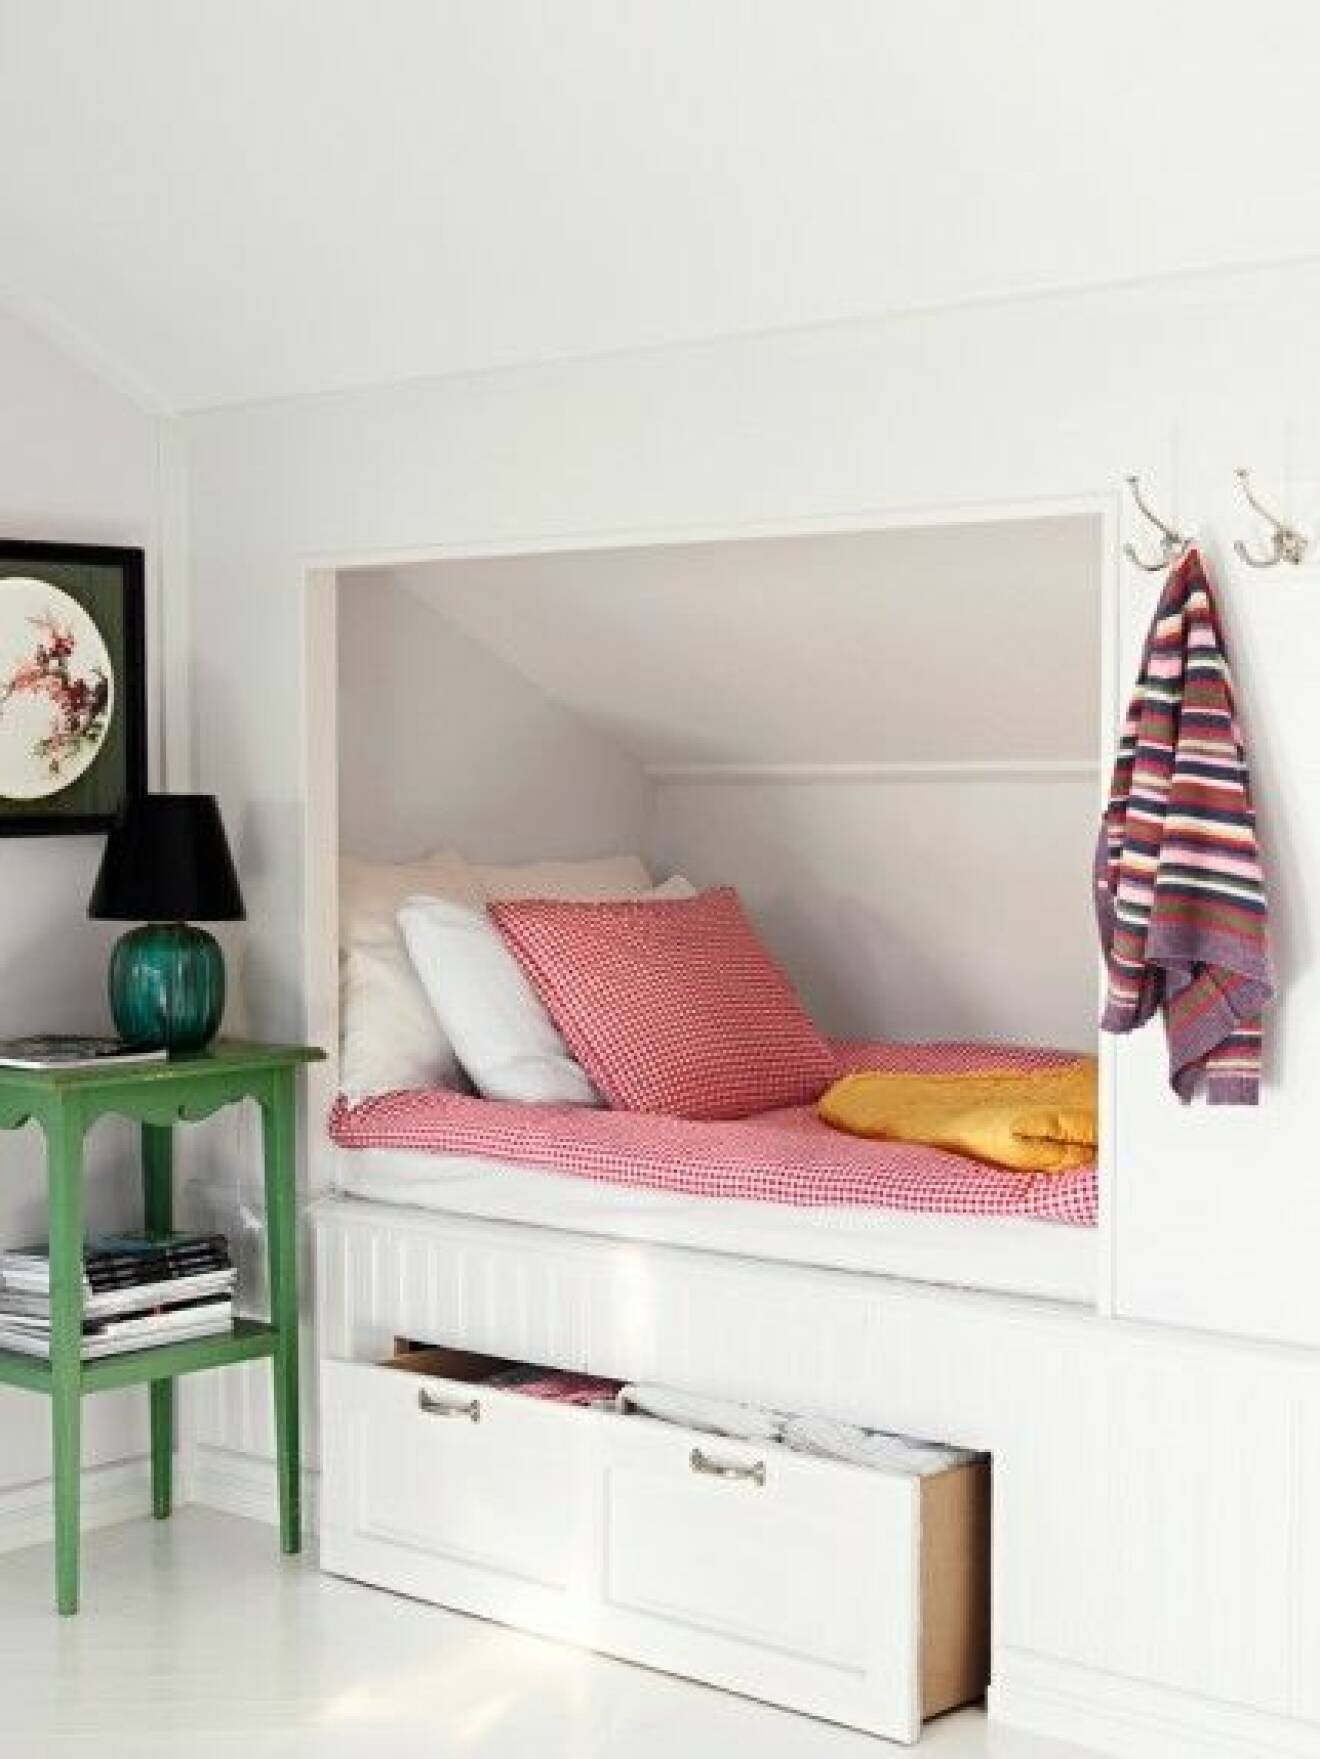 inbygd säng platsbyggd förvaring vitt sovrum inspration gästrum